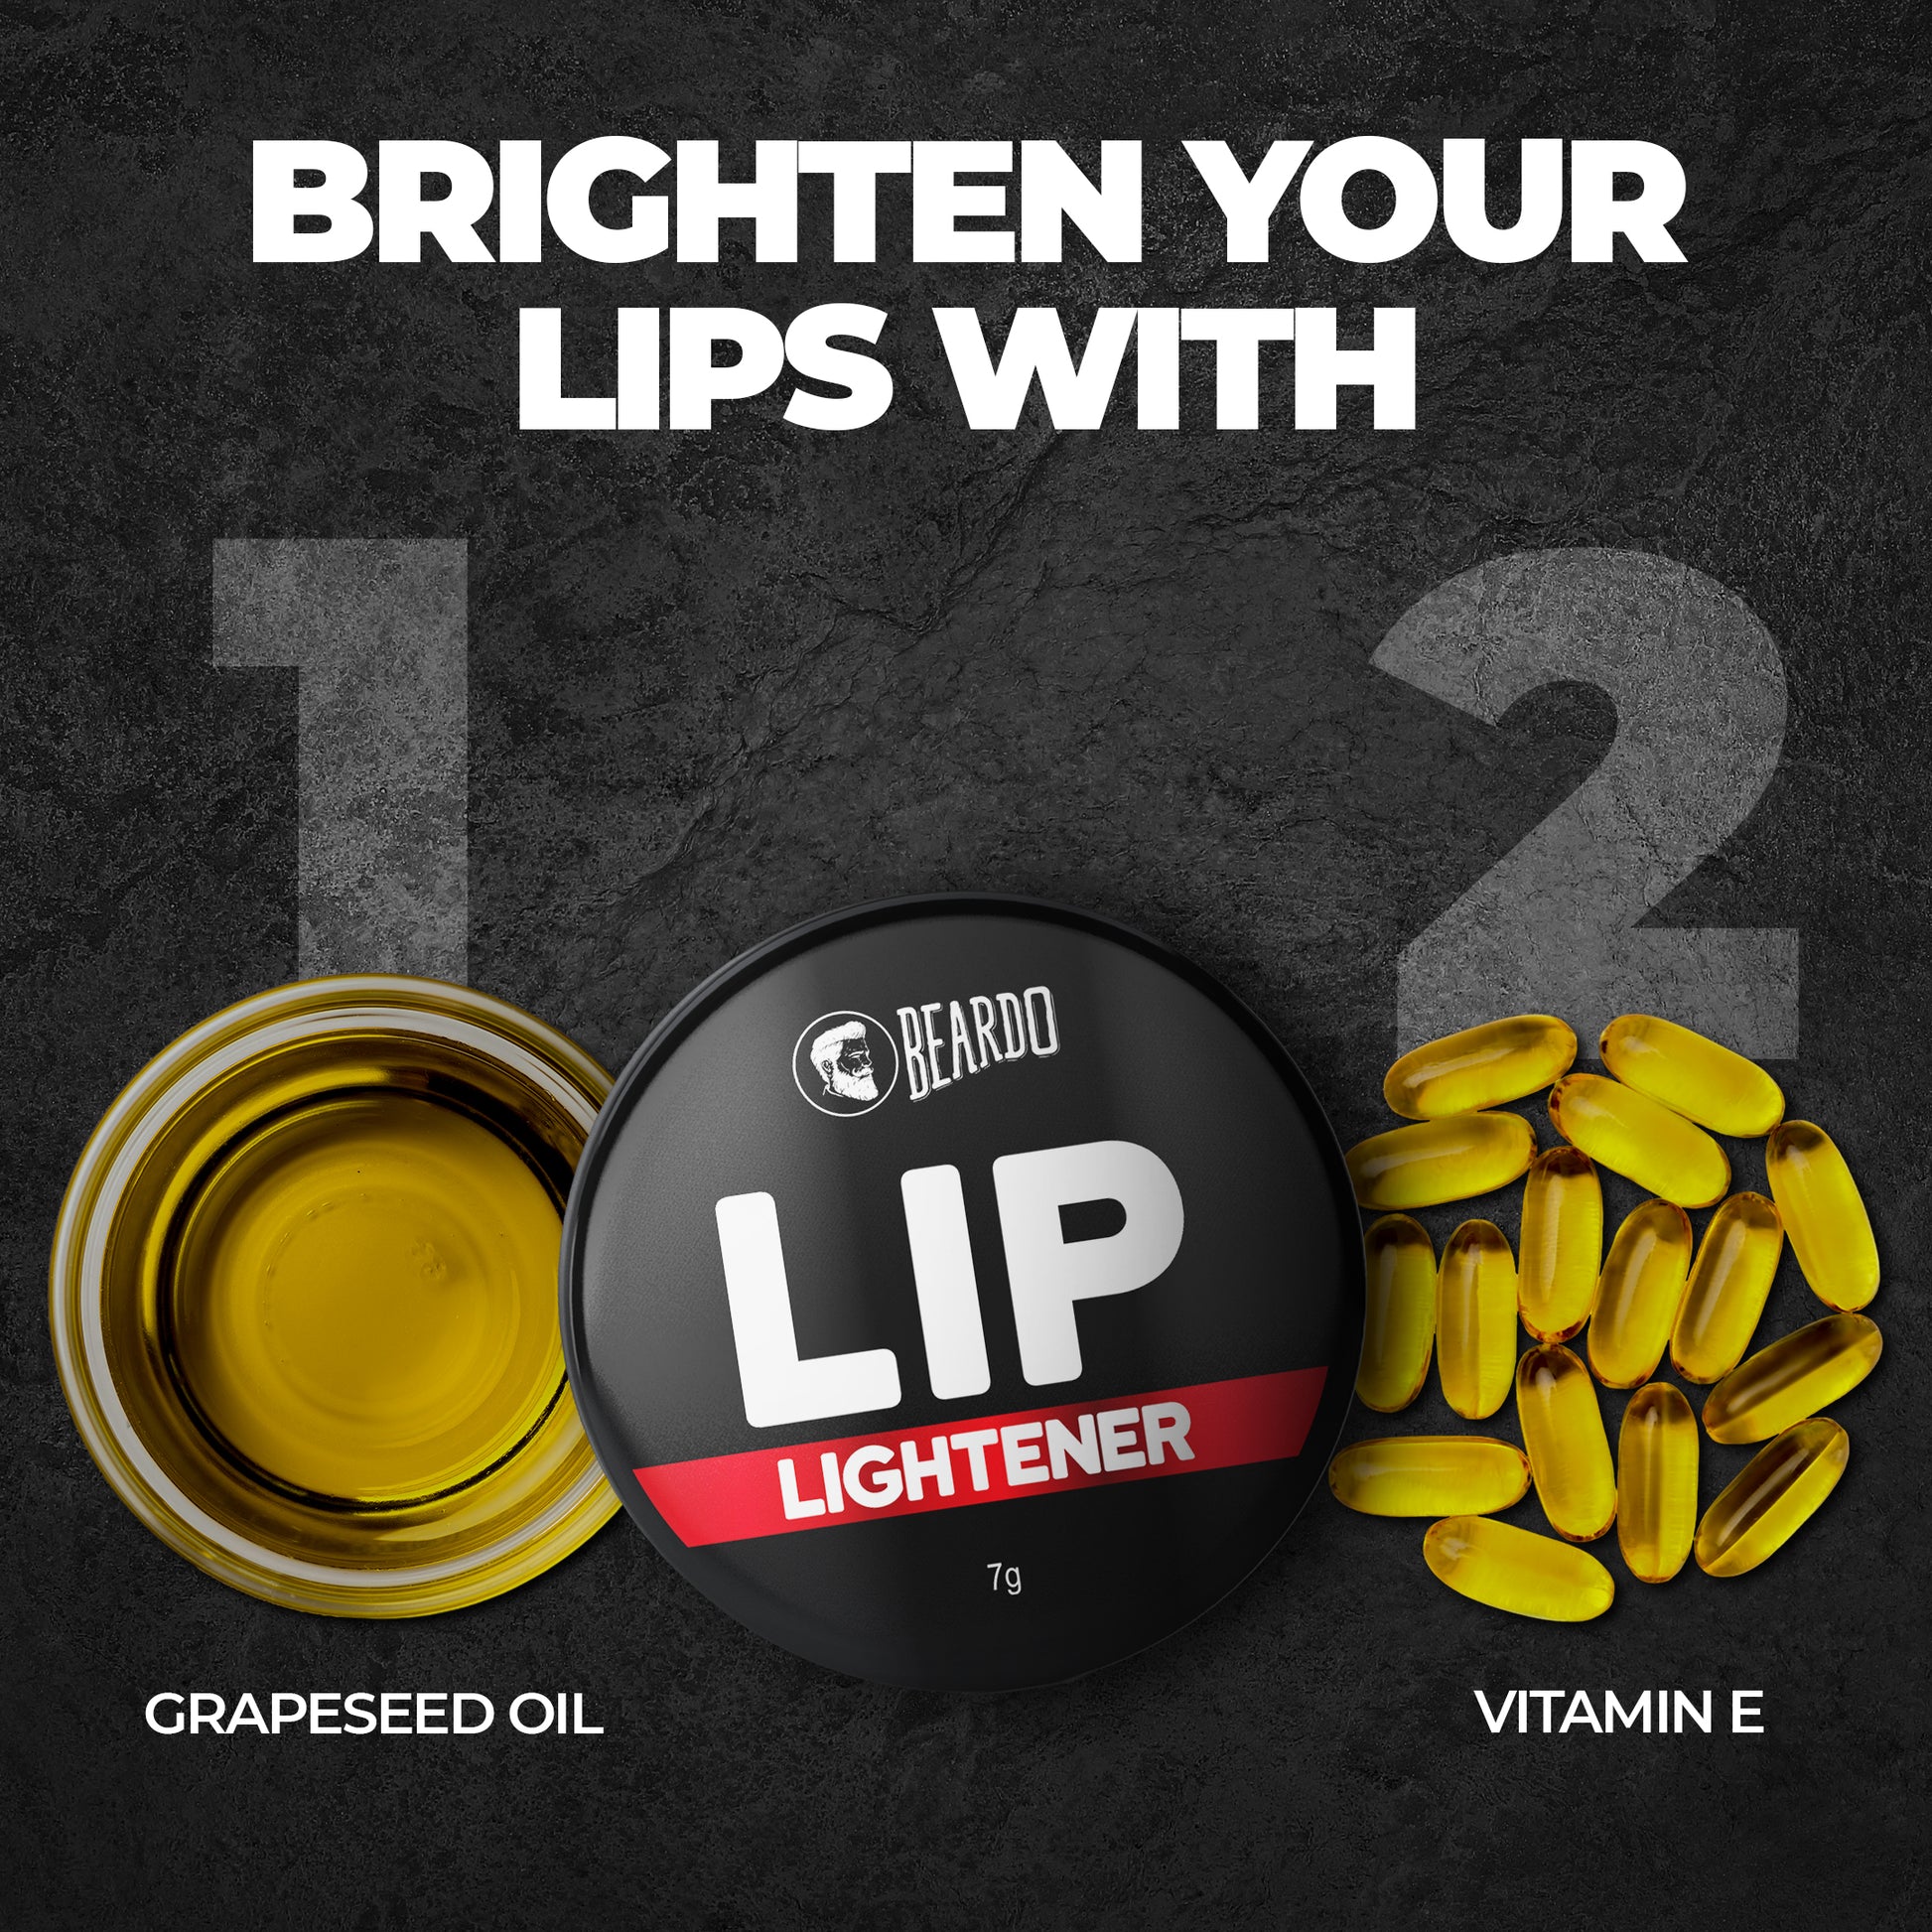 vitamin E lip balm, Vitamin E lip lightener, grapeseed oil